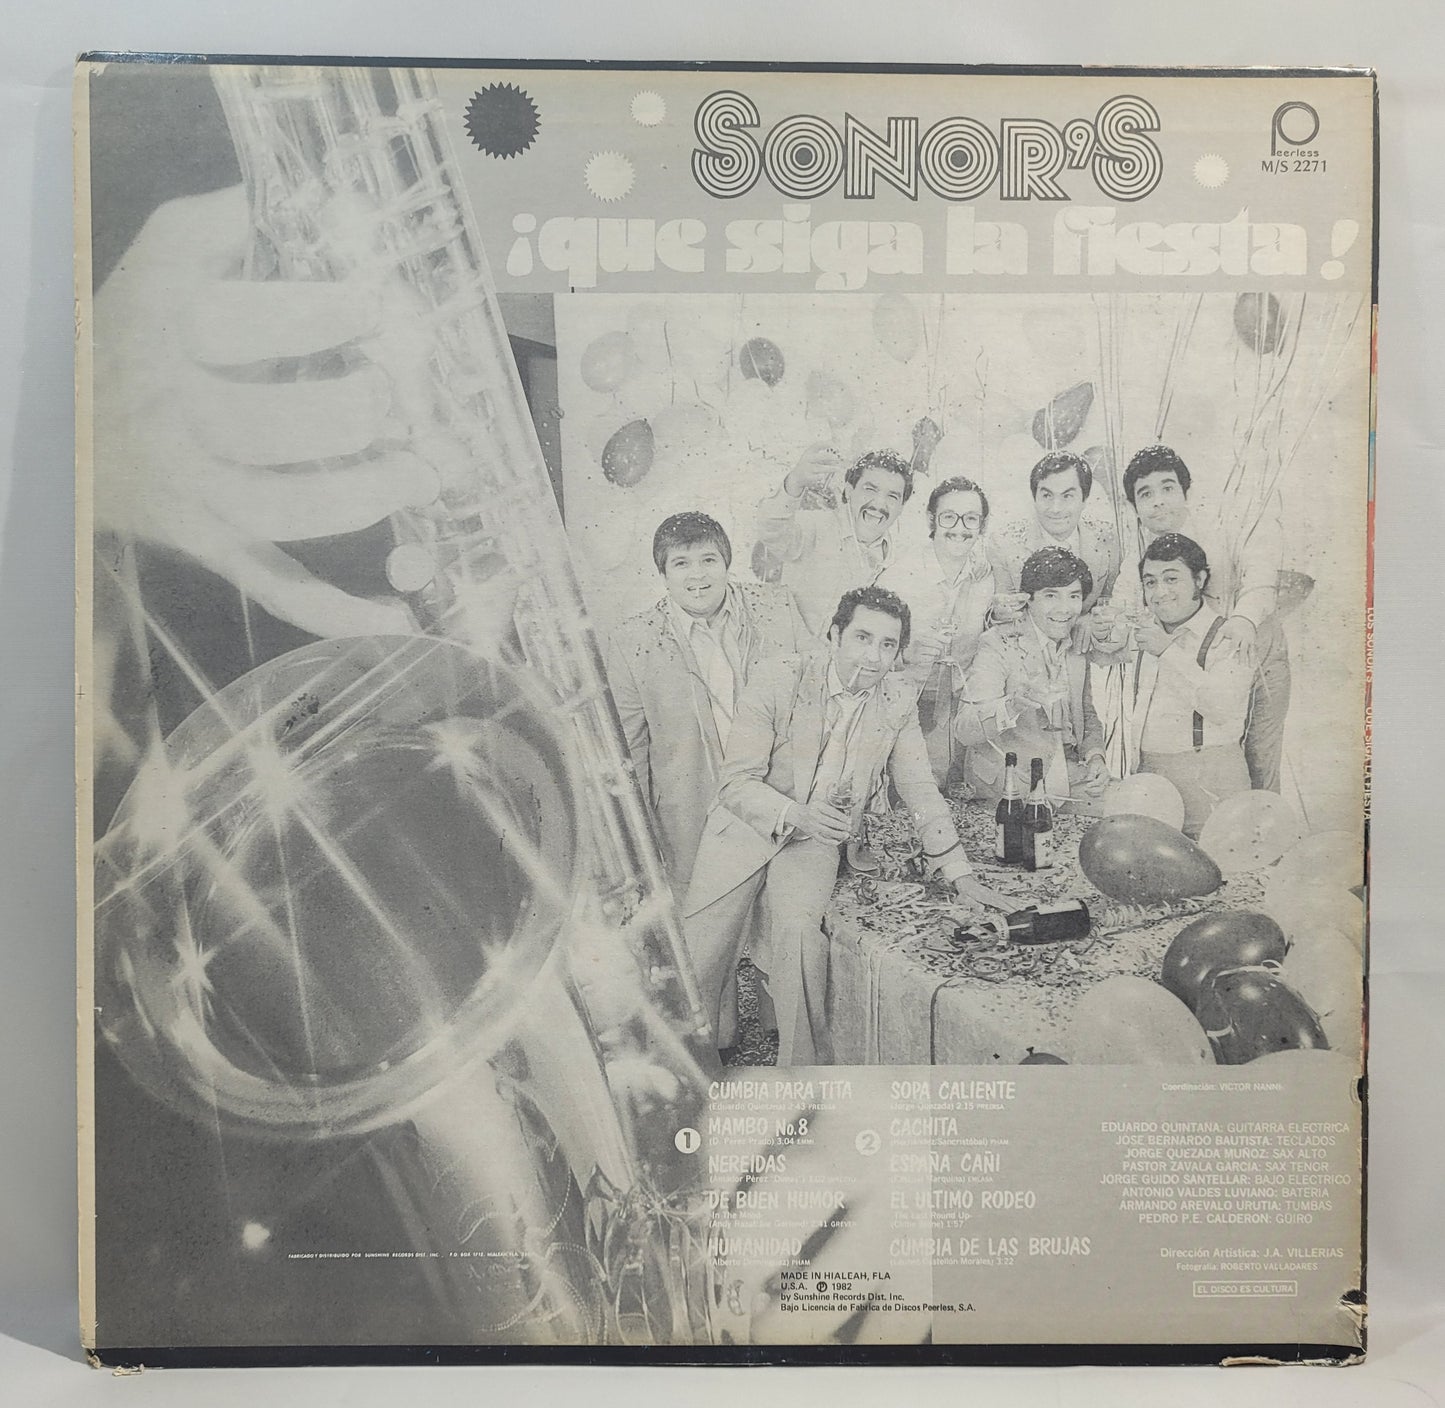 Sonor's - Que siga la fiesta [Vinyl Record LP]